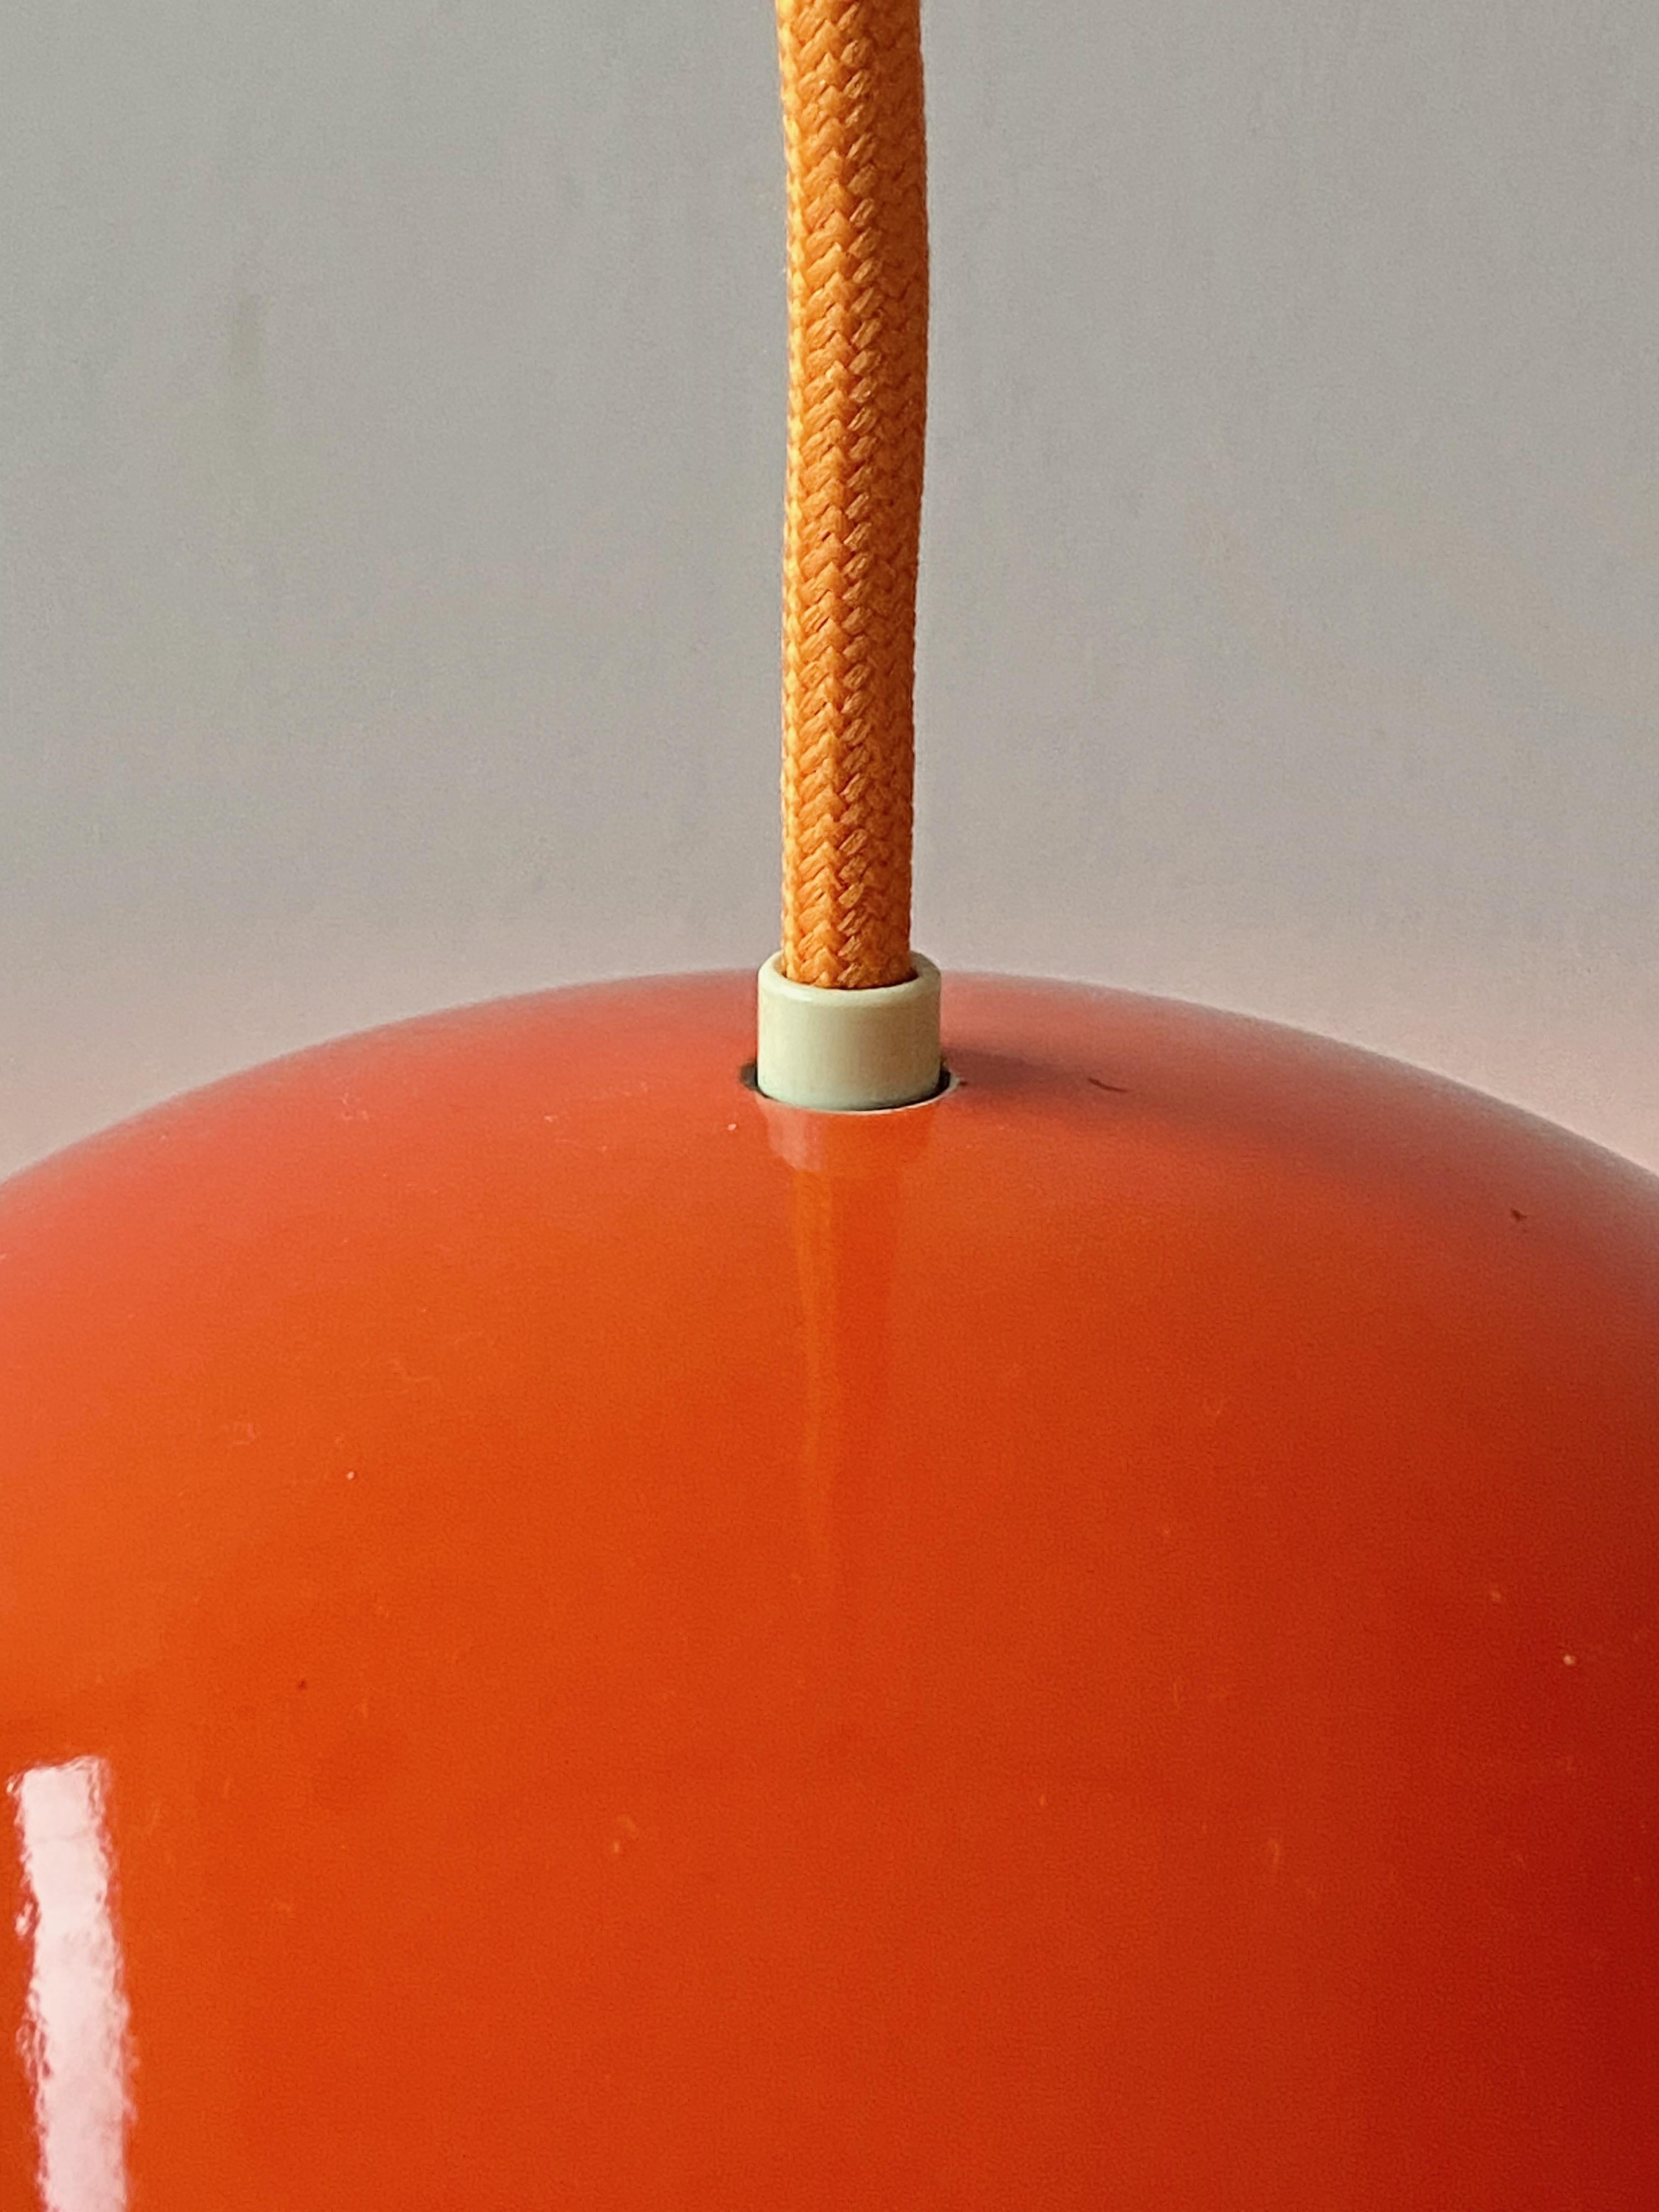 Jolie lampe pendante en forme de pot de fleur en émail rouge, Design/One en 1968, produite par Louis Poulsen, Fabriquée au Danemark. En métal émaillé, plus en production. La lampe est en bon état. Aucune pièce manquante, cordon électrique en tissu